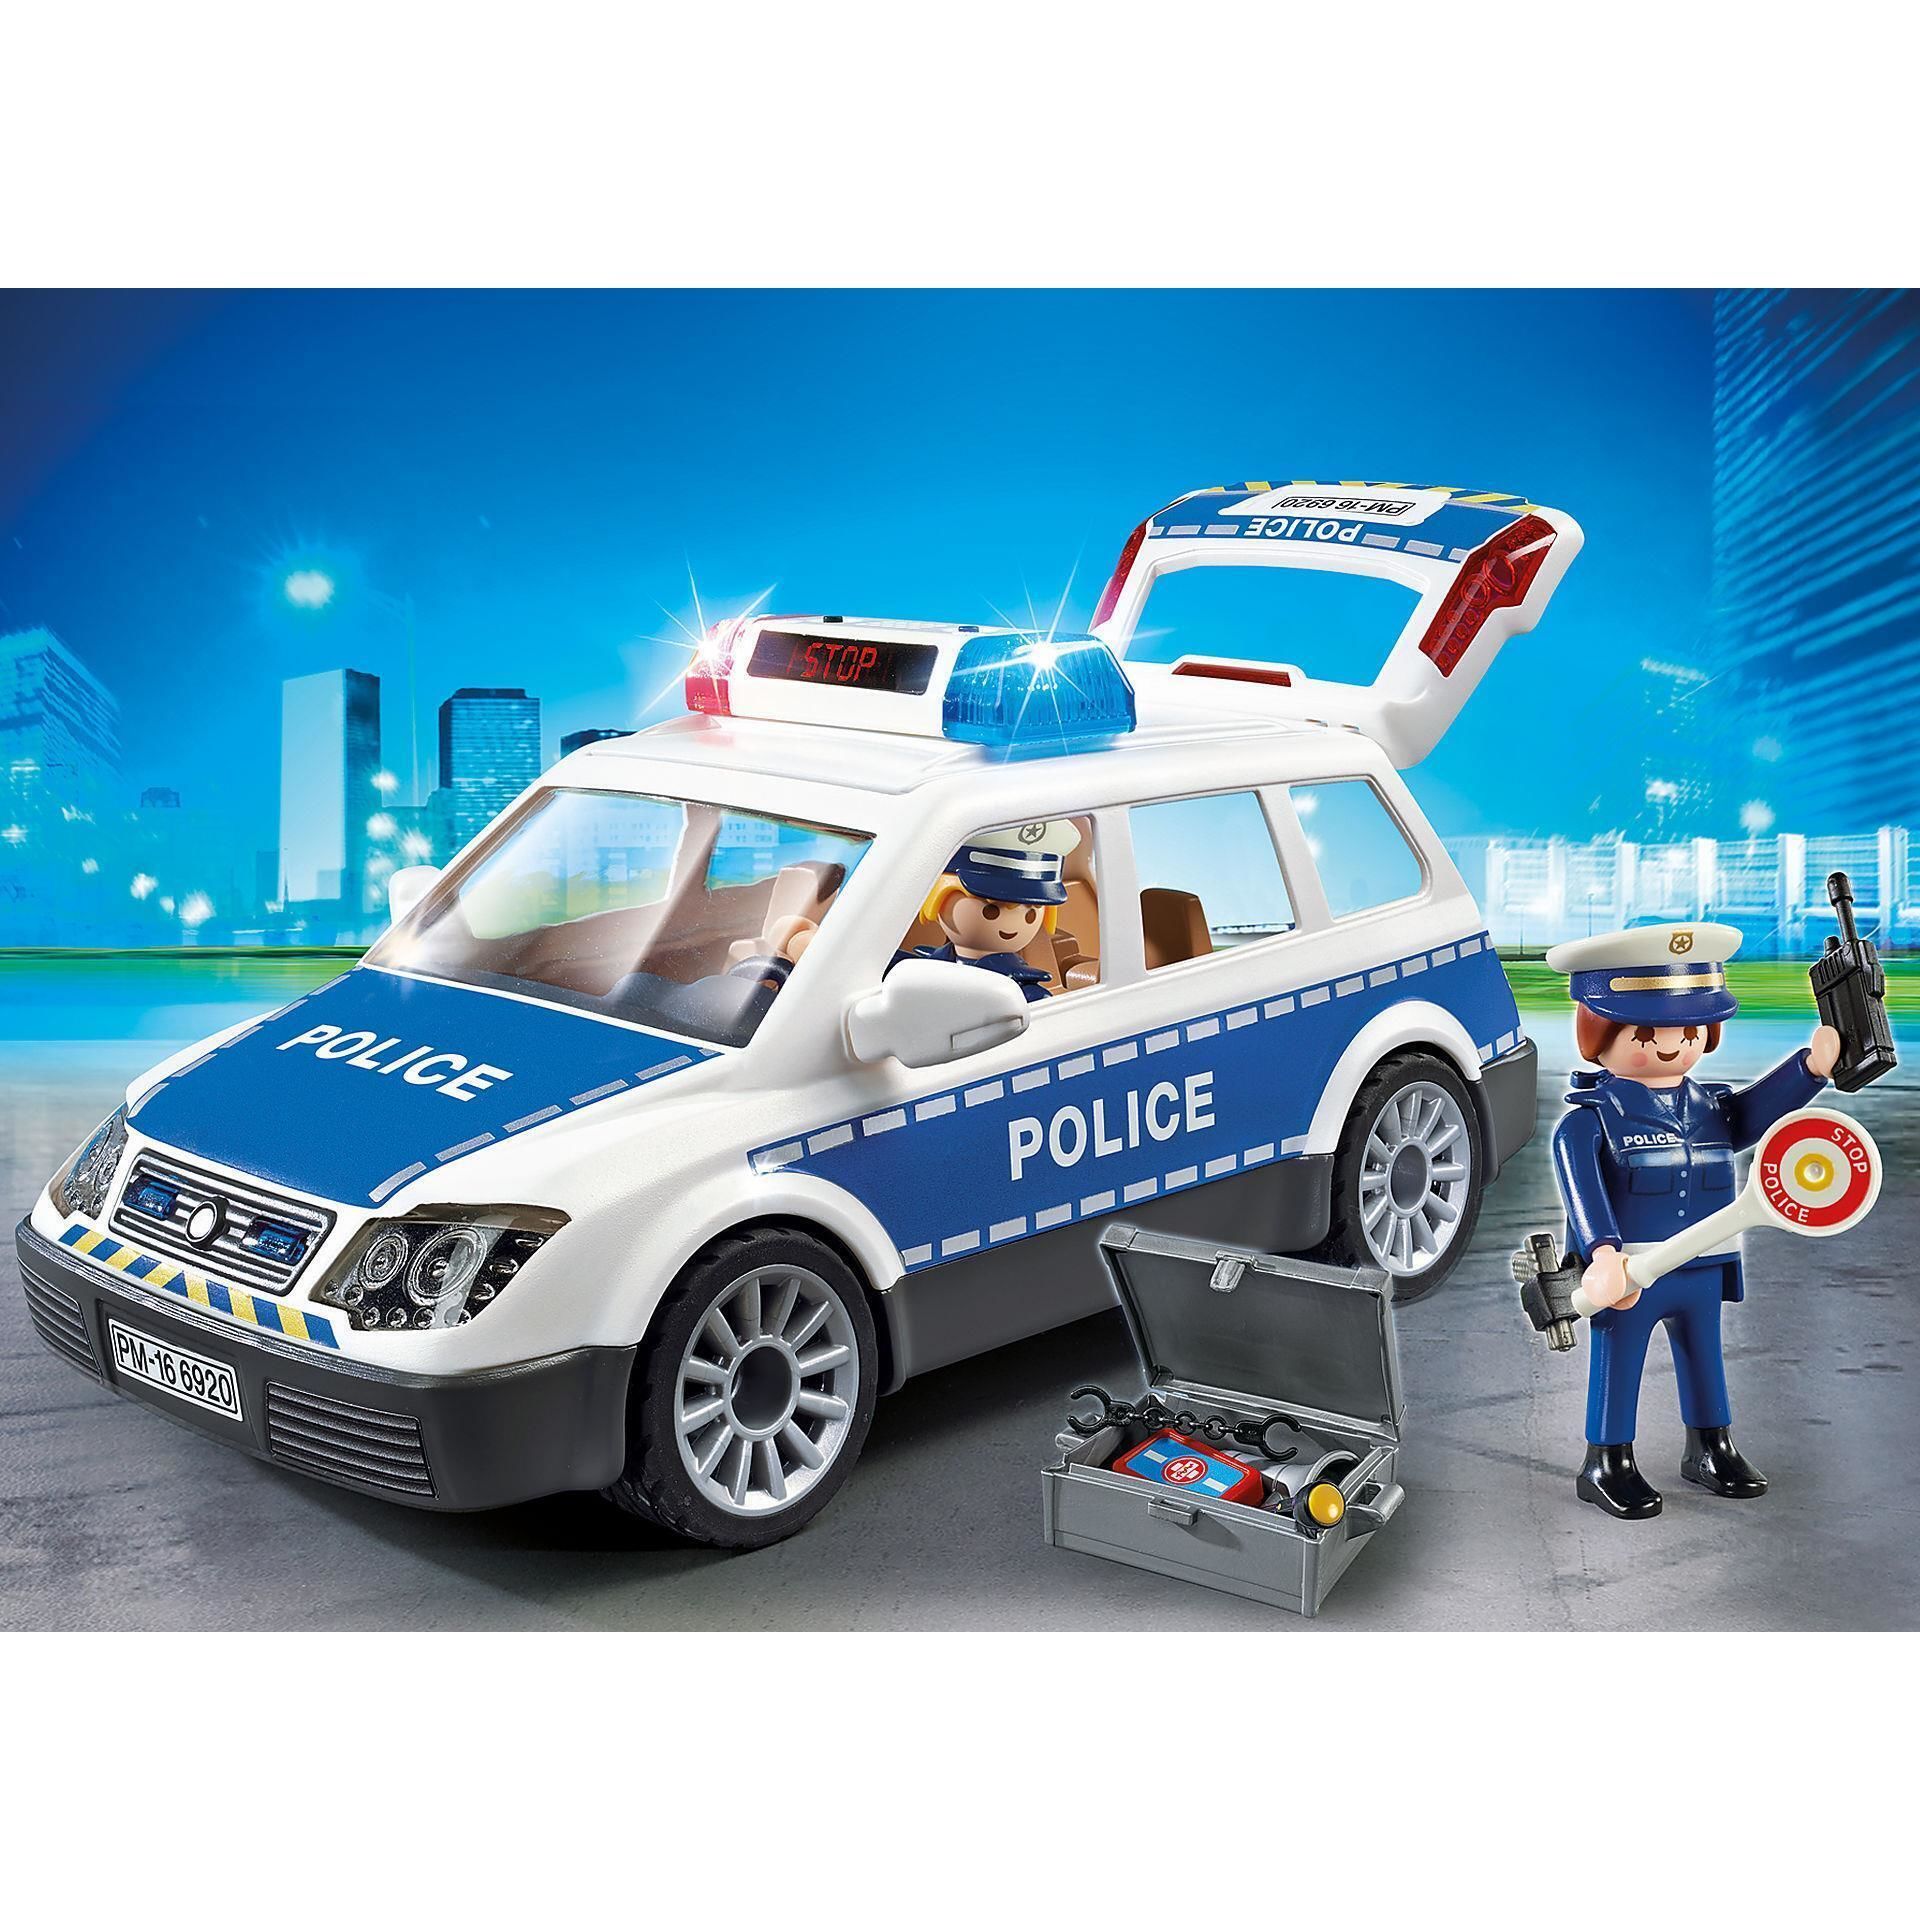 Про полицейскую машину для мальчиков. Полицейская машина Playmobil 6920. Playmobil Полицейская машина 9236. Playmobil полиция 6920. Playmobil Polizei машинка полиция.